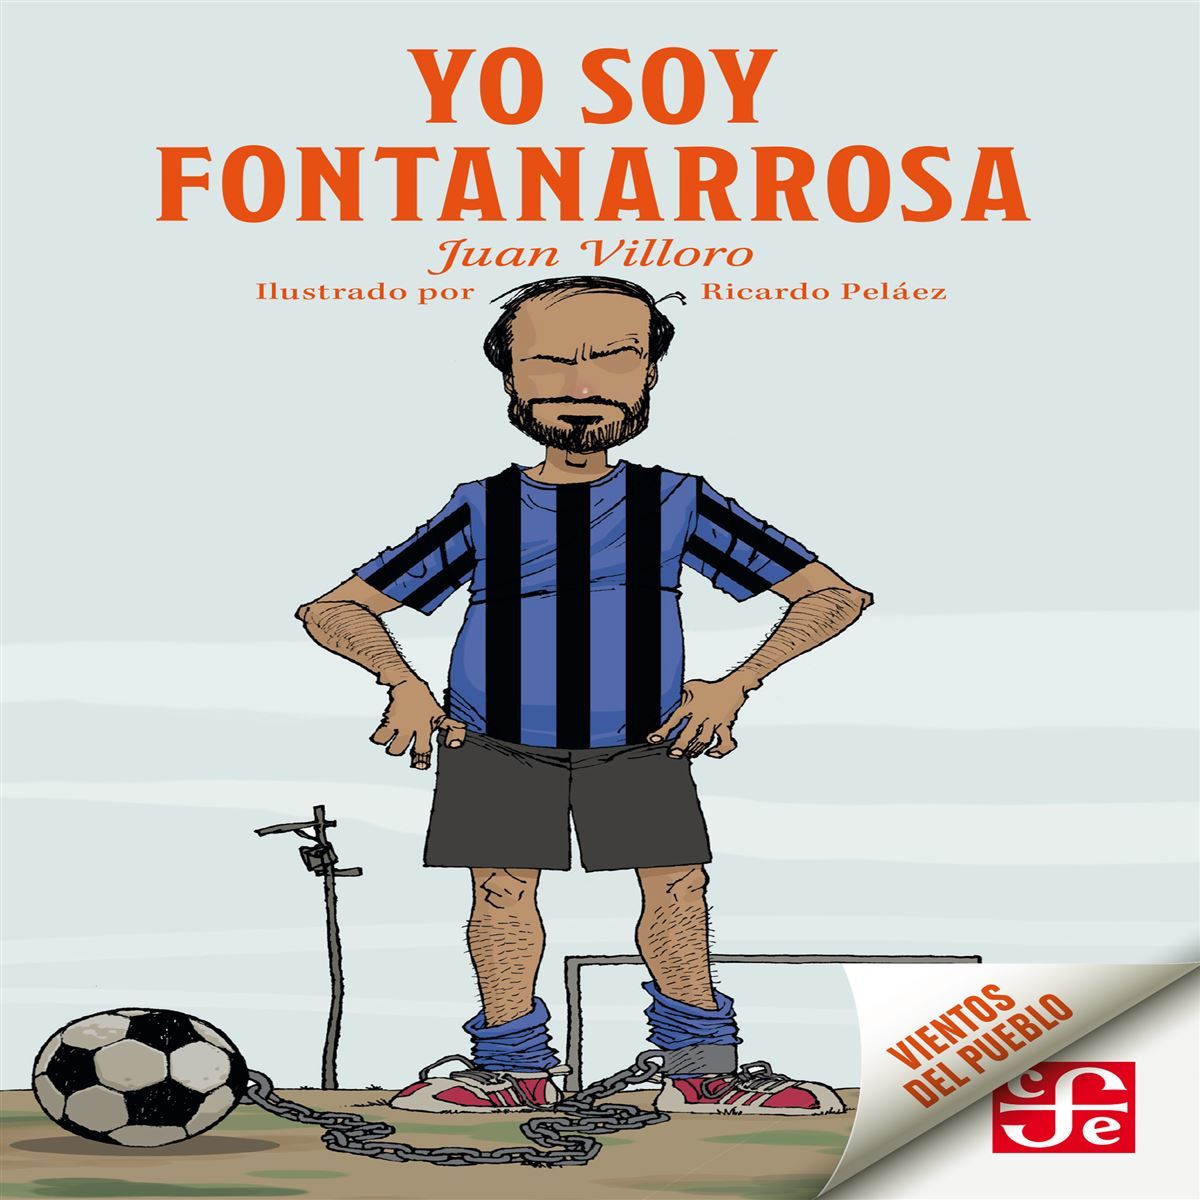 Soy Fontanarrosa y juego fútbol